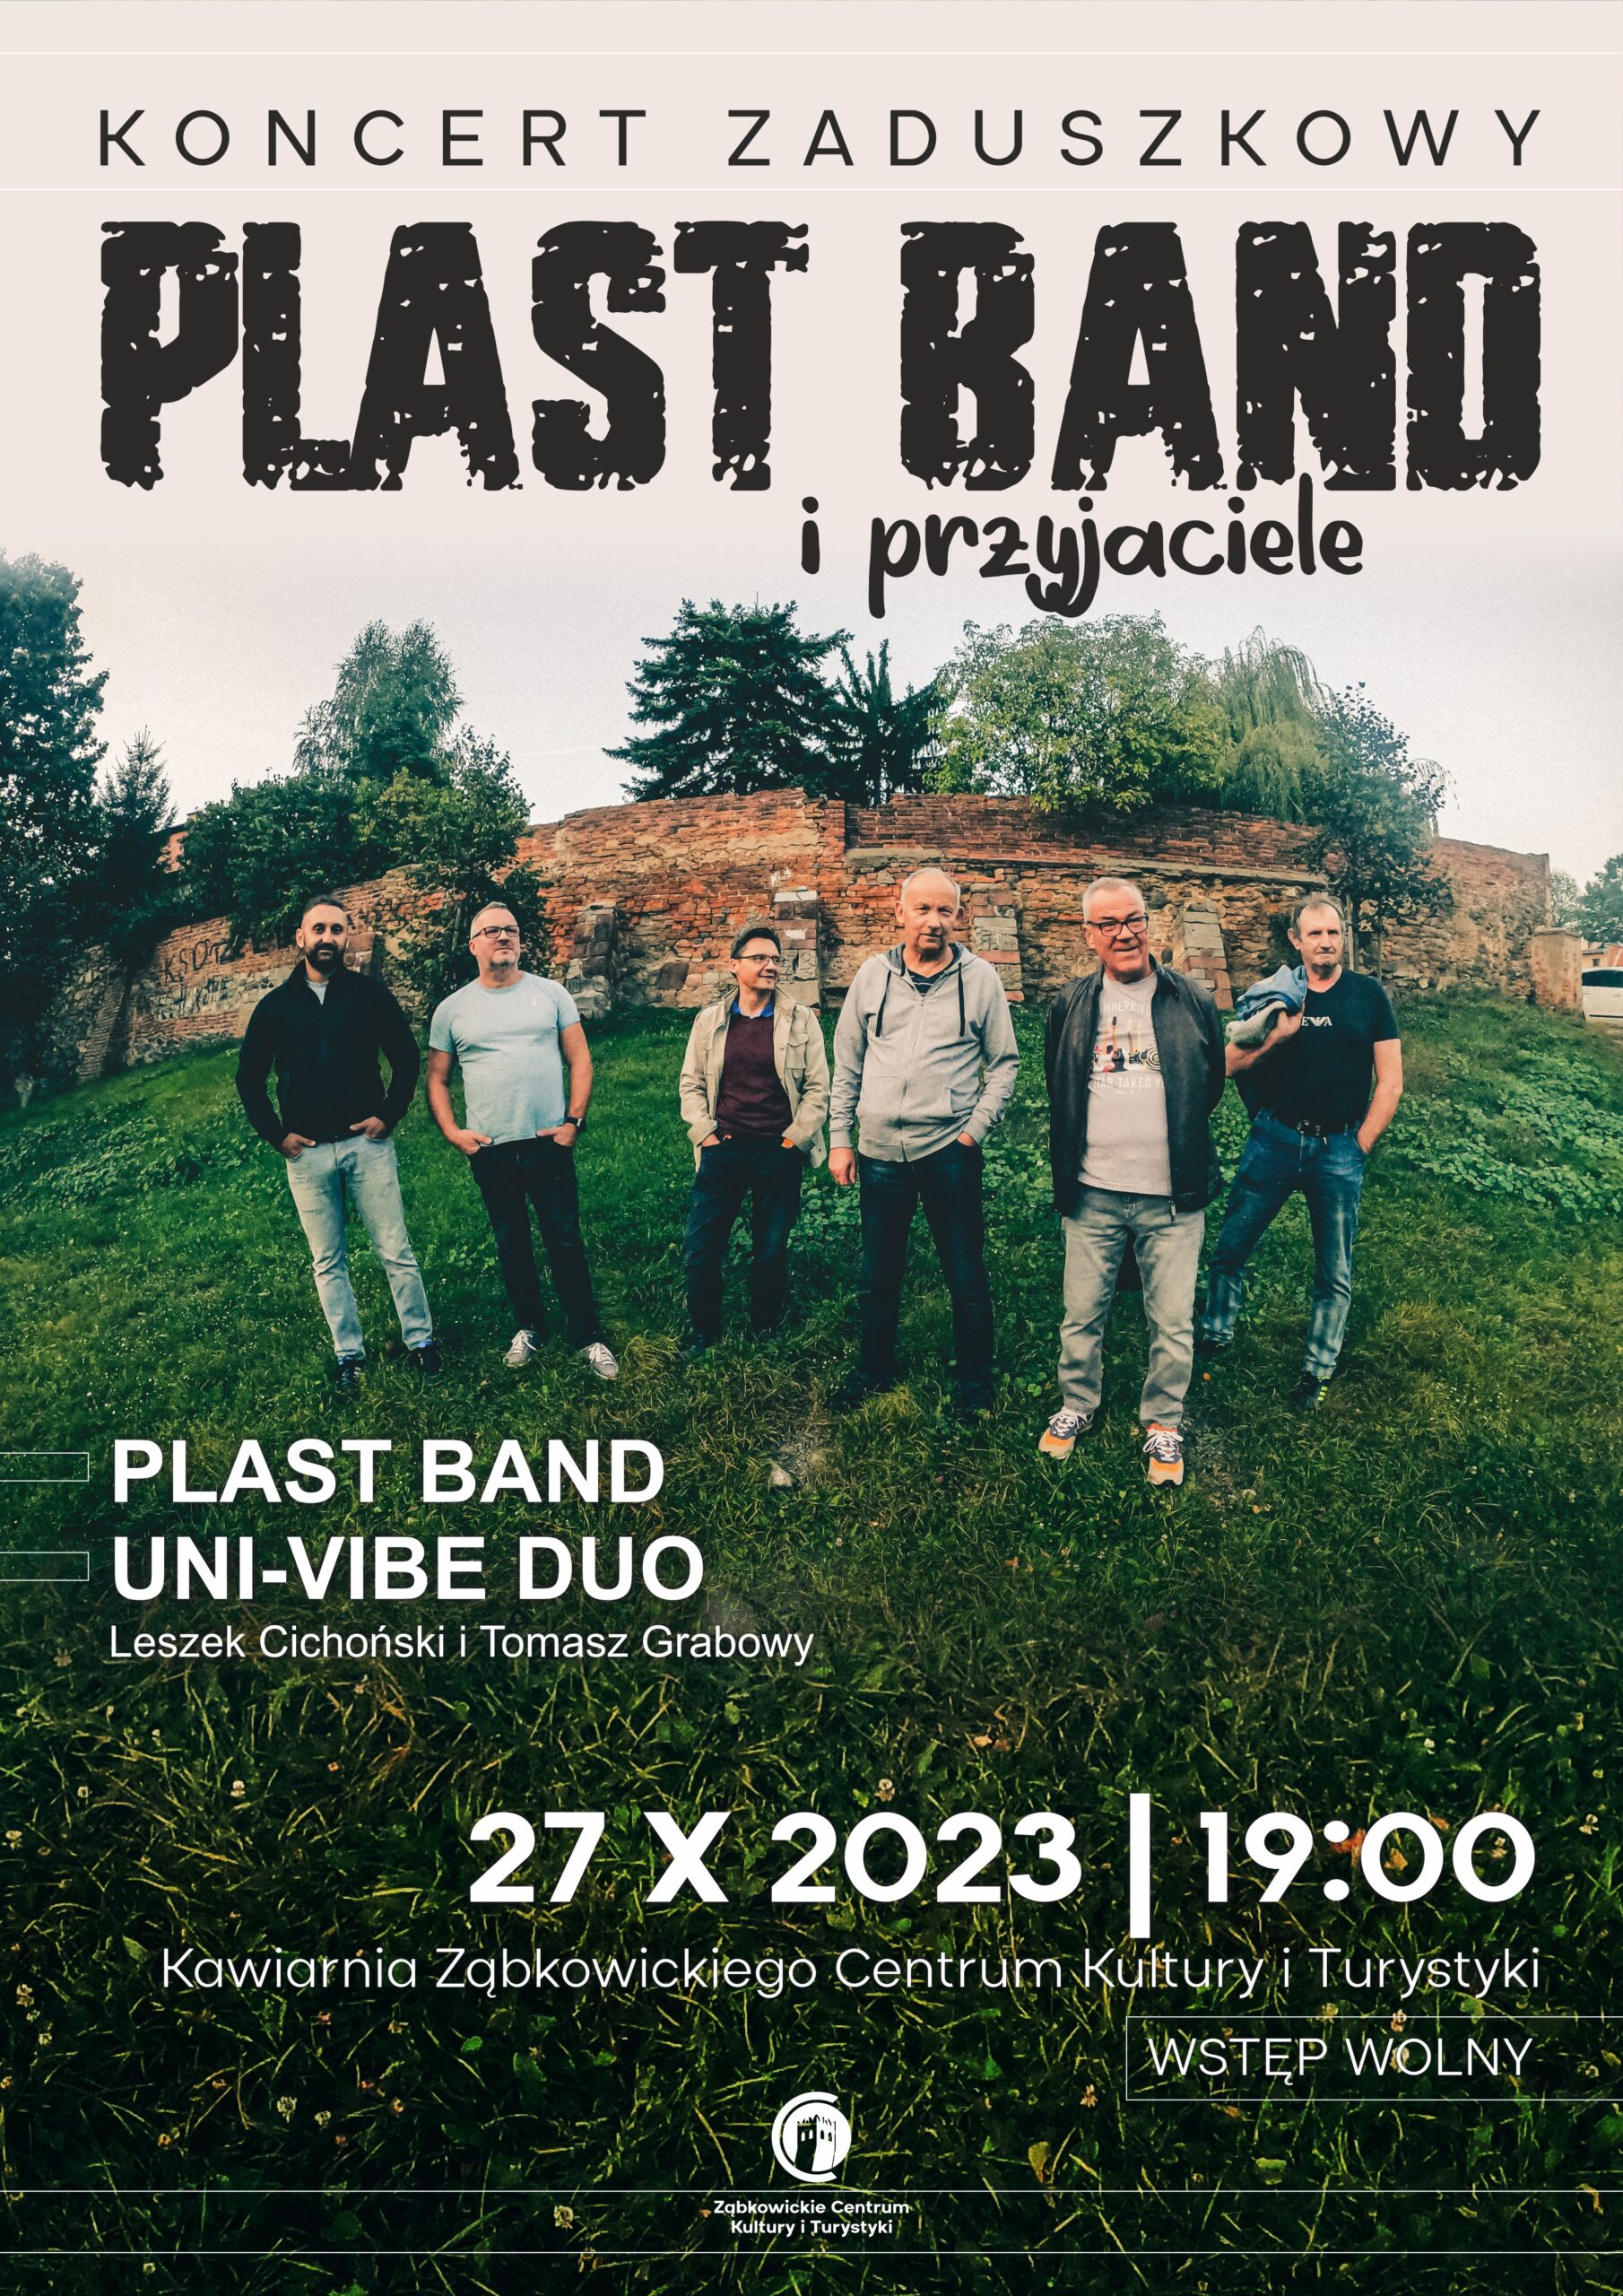 Plakat informacyjny o koncercie zepołu PLAST BAND 27 października 2023 o godzinie 19:00 w kawiarni Ząbkowickiego Centrum Kultury i Turystyki. Na plakacie znajduje się zdjęcie zespołu.